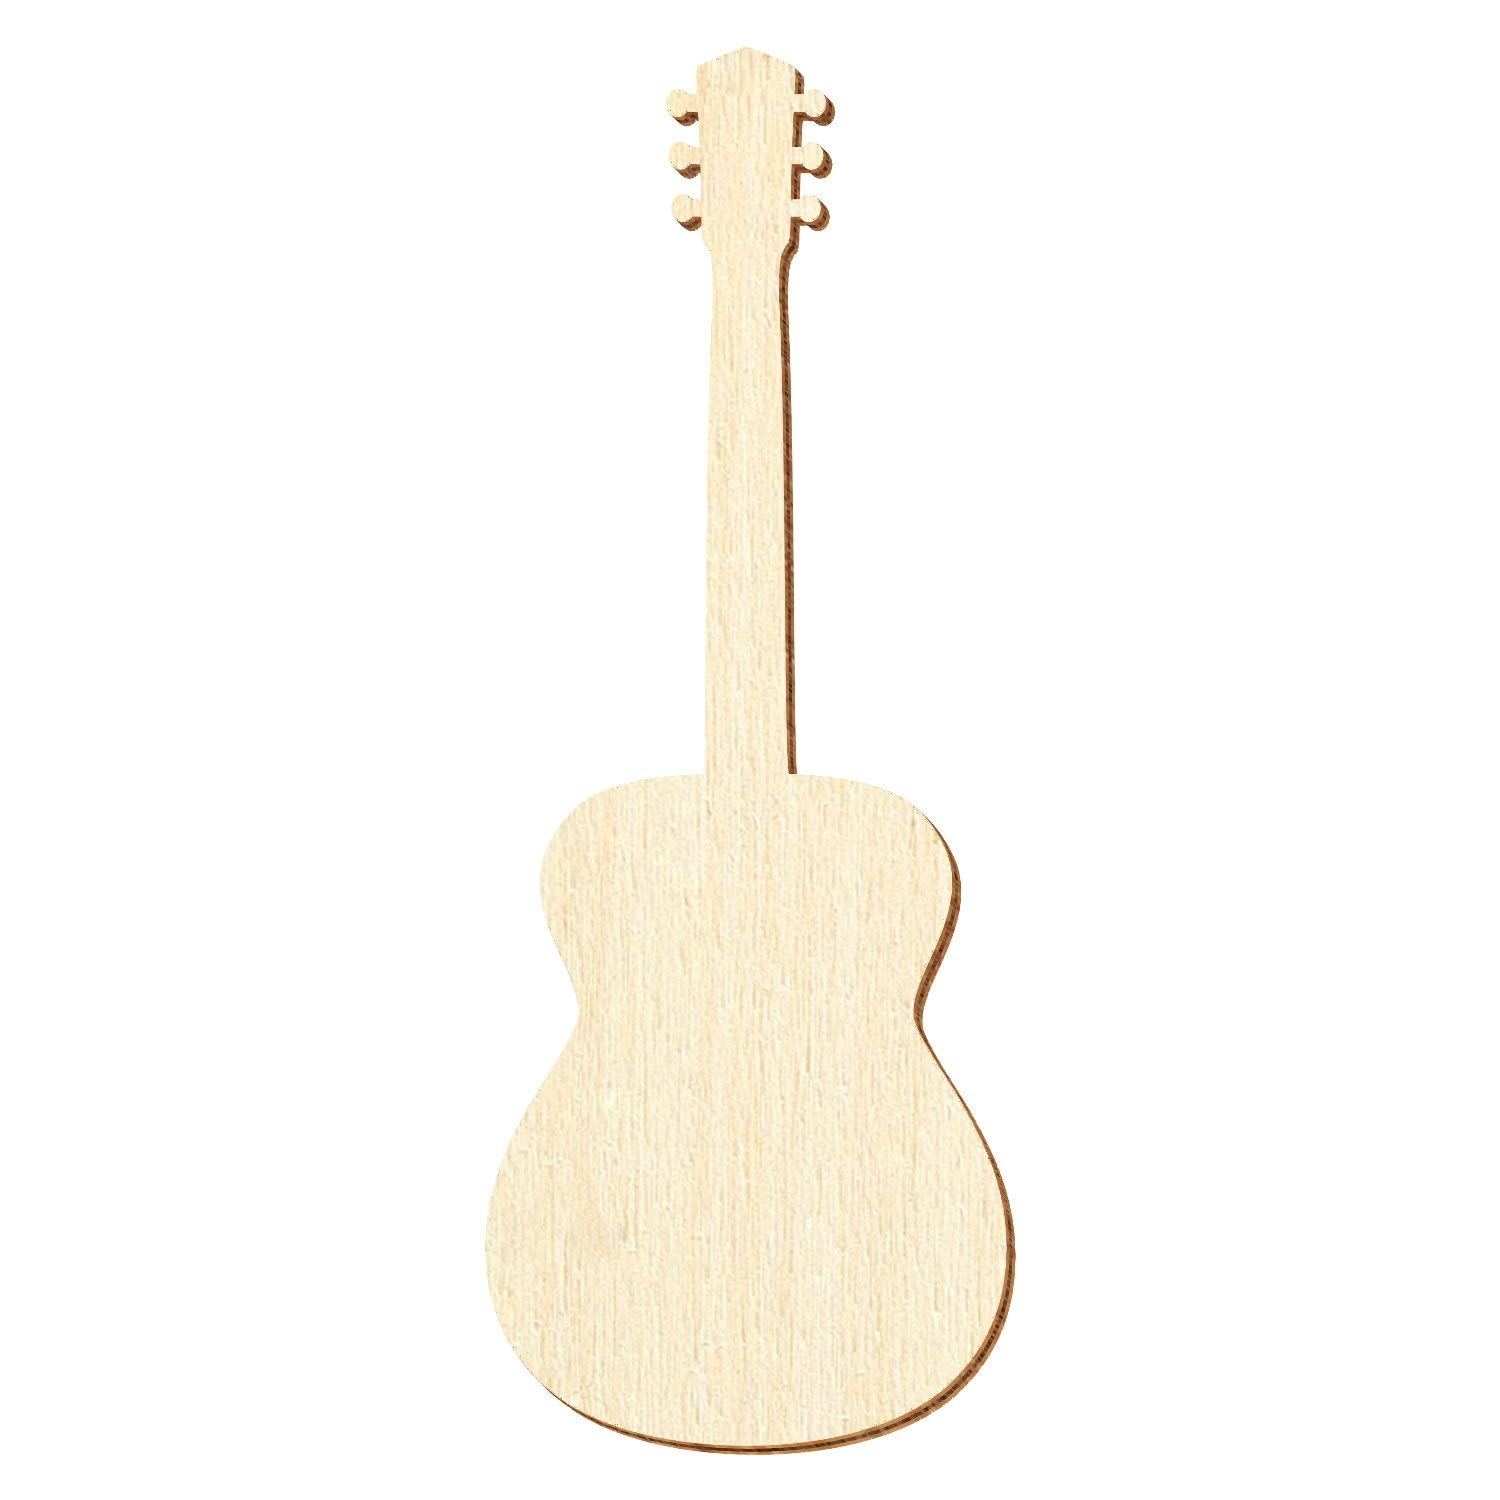 Holz Akustikgitarre - Deko Zuschnitte Größenauswahl, Pack mit:50 Stück, Größe:26cm